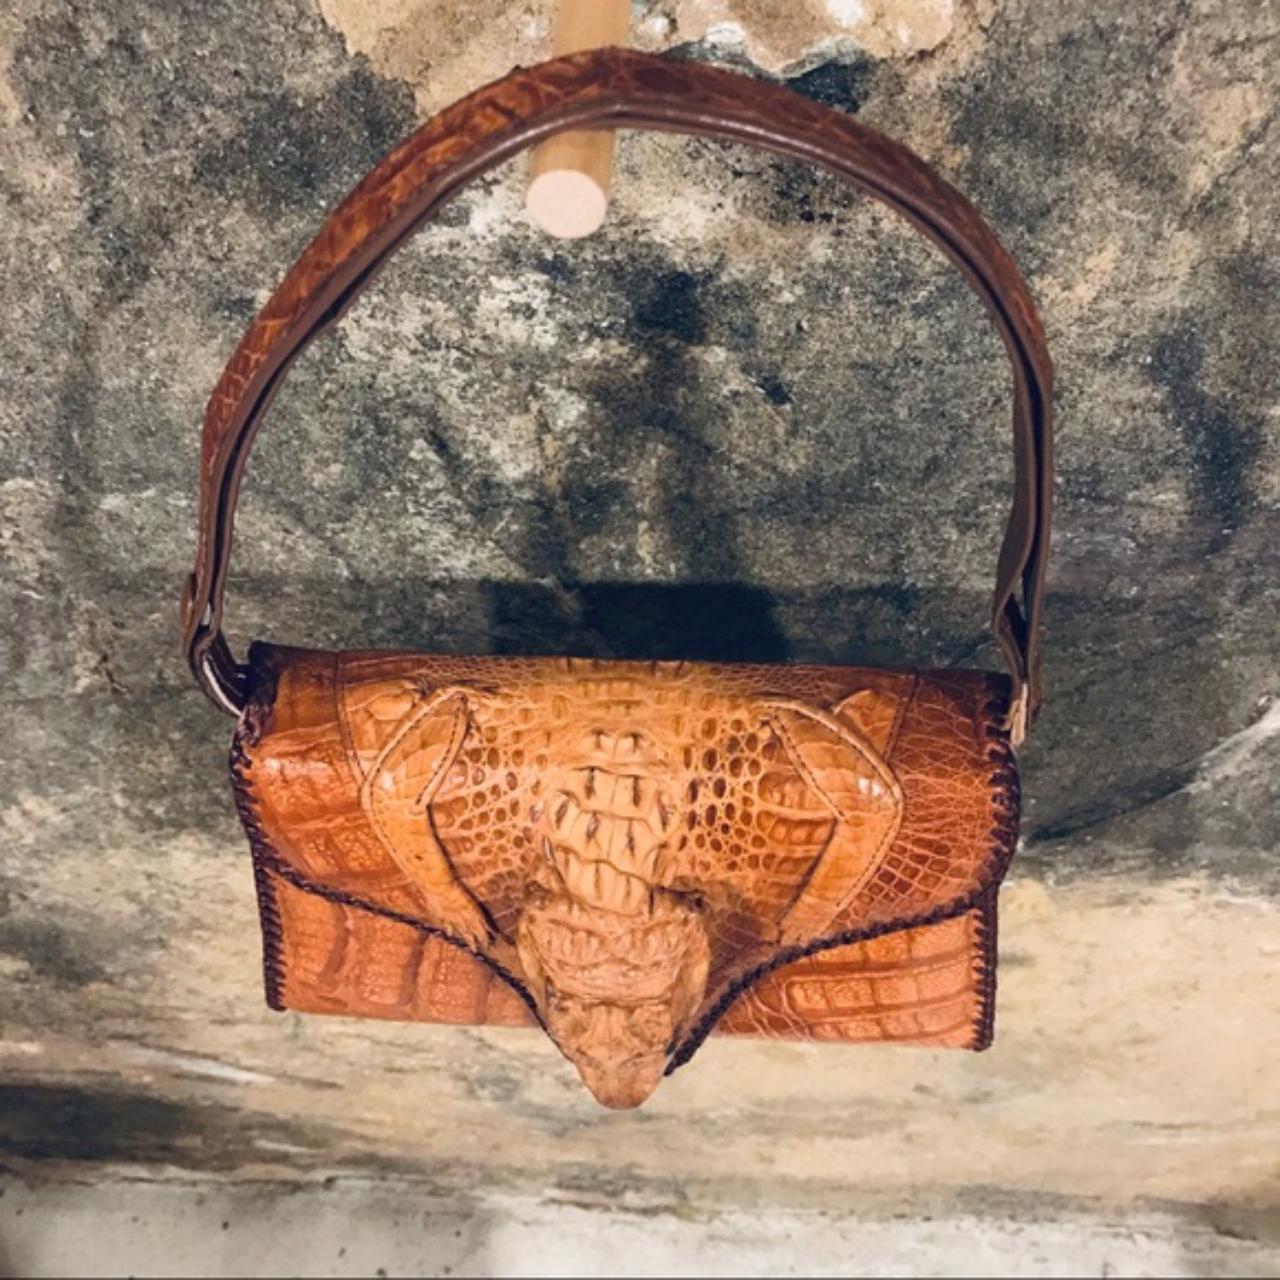 Sold at Auction: Vintage Genuine Alligator Handbag, Cuba